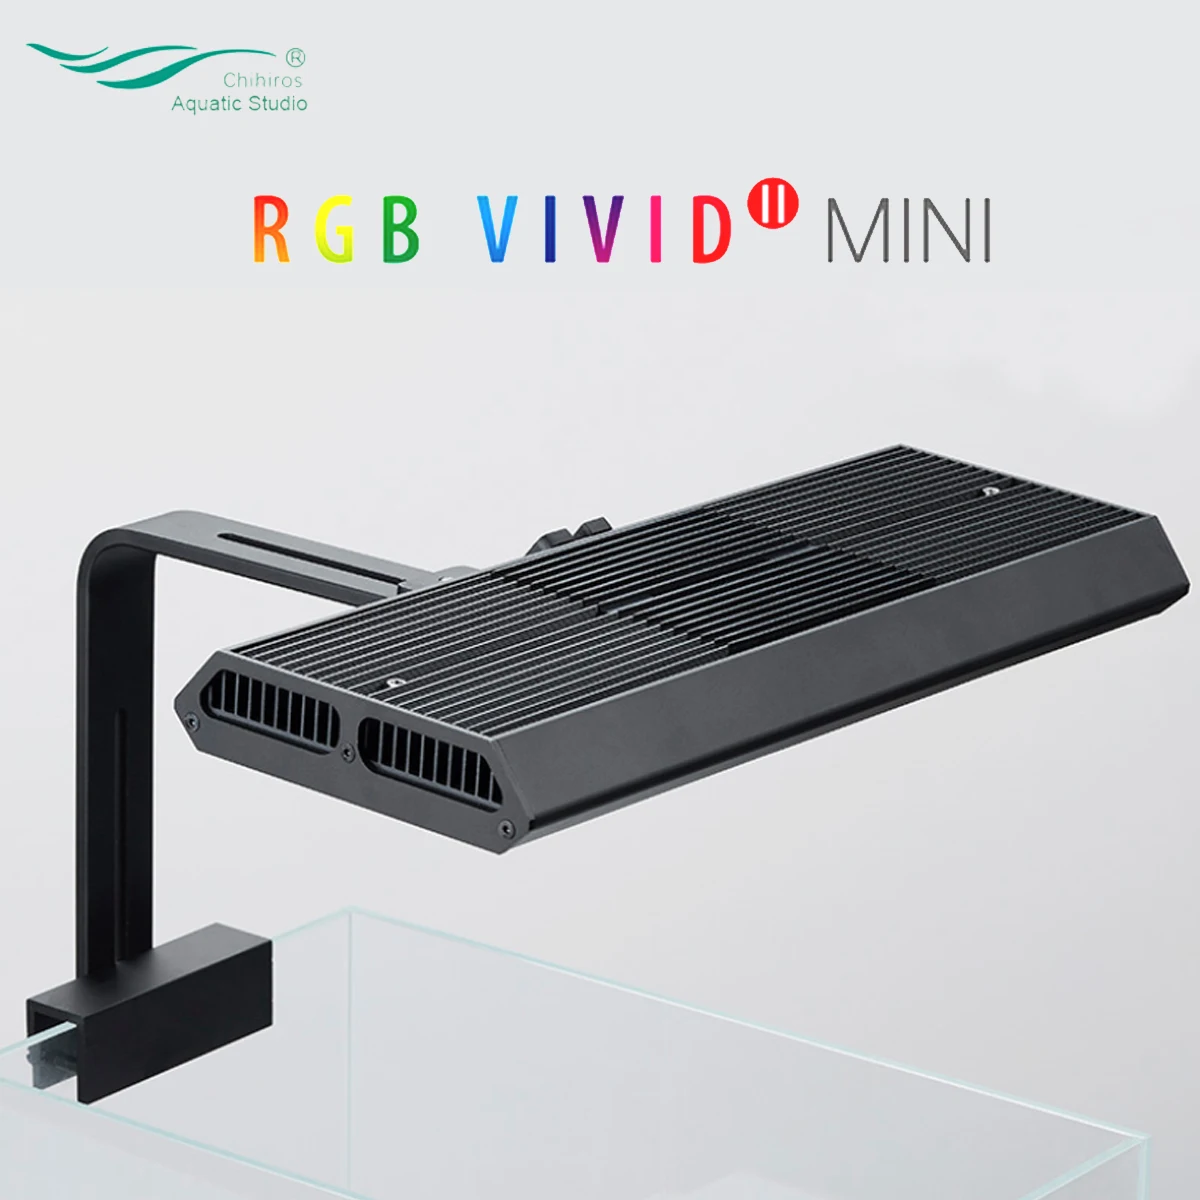 저렴한 Chihiros-새로운 RGB 비비드 II 미니 수족관 LED 조명 스마트 블루투스 앱 제어 식물 LED 램프 조명 시스템 무료 배송